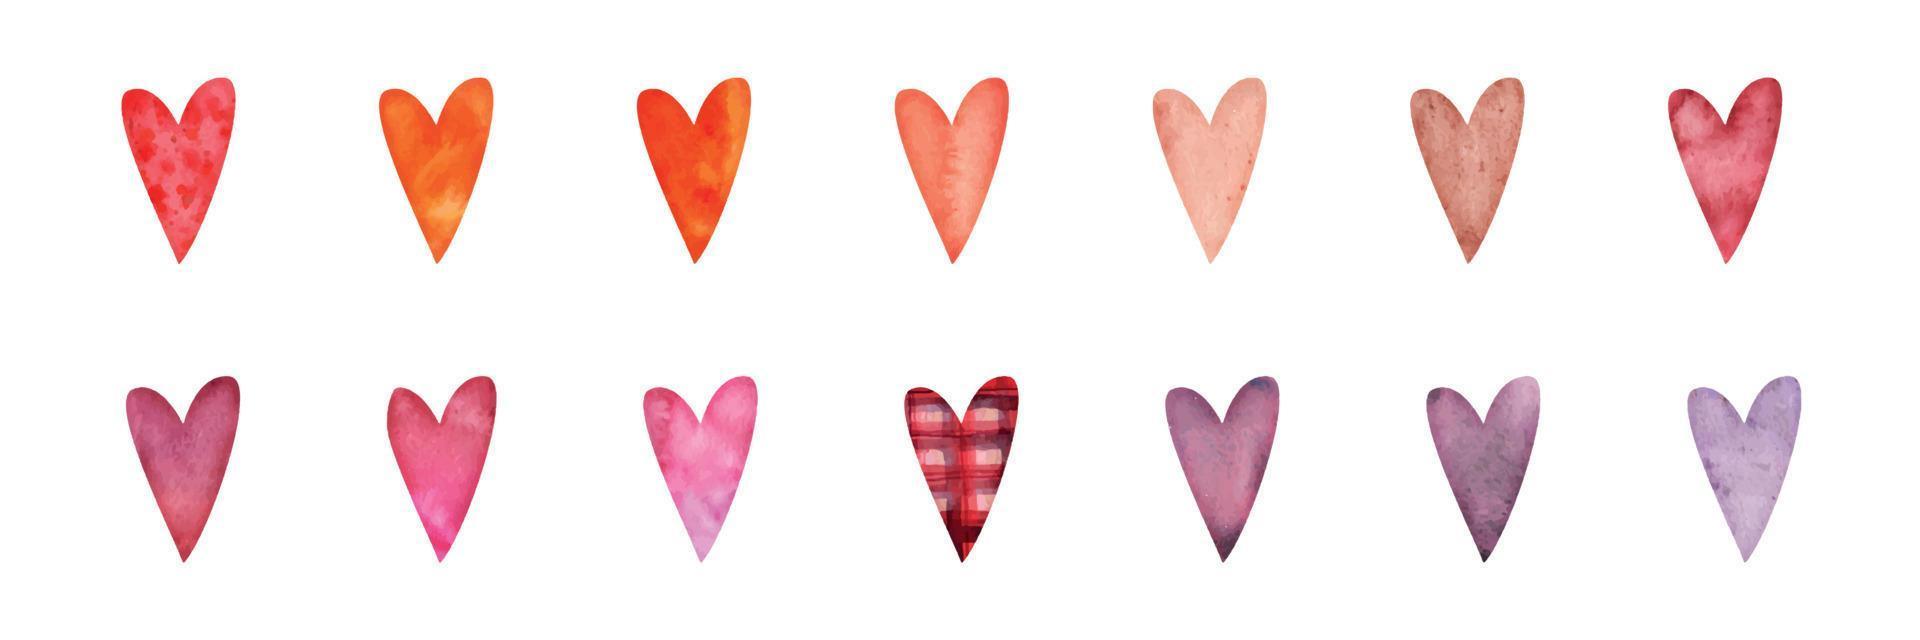 conjunto de objetos desenhados à mão em aquarela, corações vermelhos, rosa e roxos texturizados para o dia dos namorados. isolado no fundo branco. design para papel, amor, cartões comemorativos, têxtil, impressão, papel de parede, casamento vetor